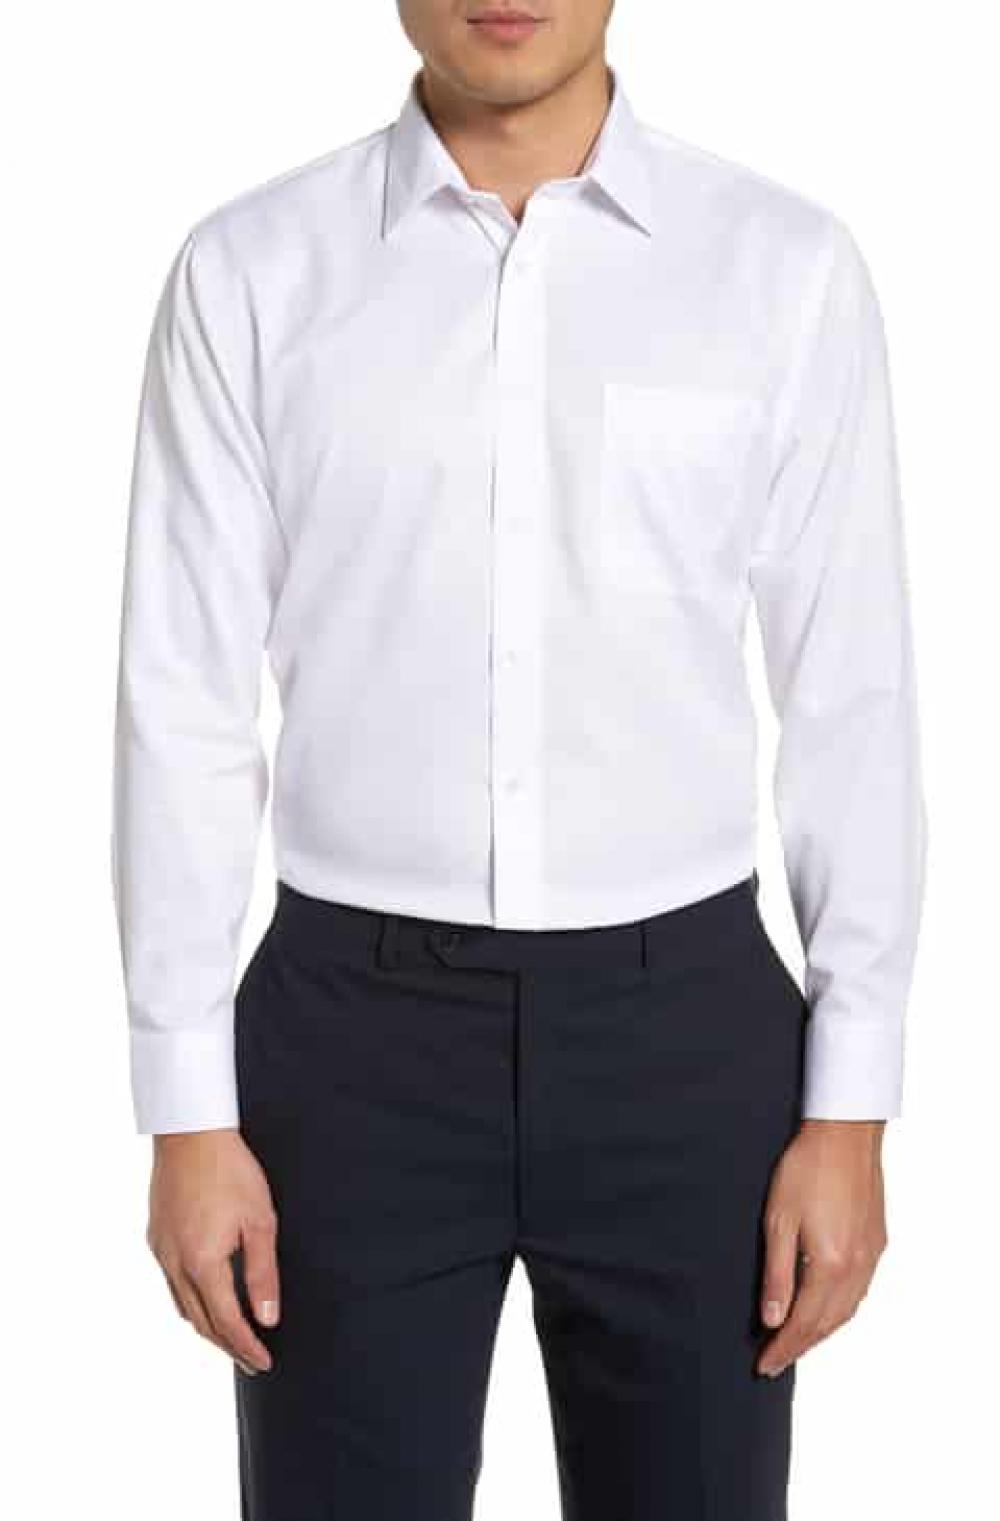 Plain Long Sleeve Shirt Extra Large Size